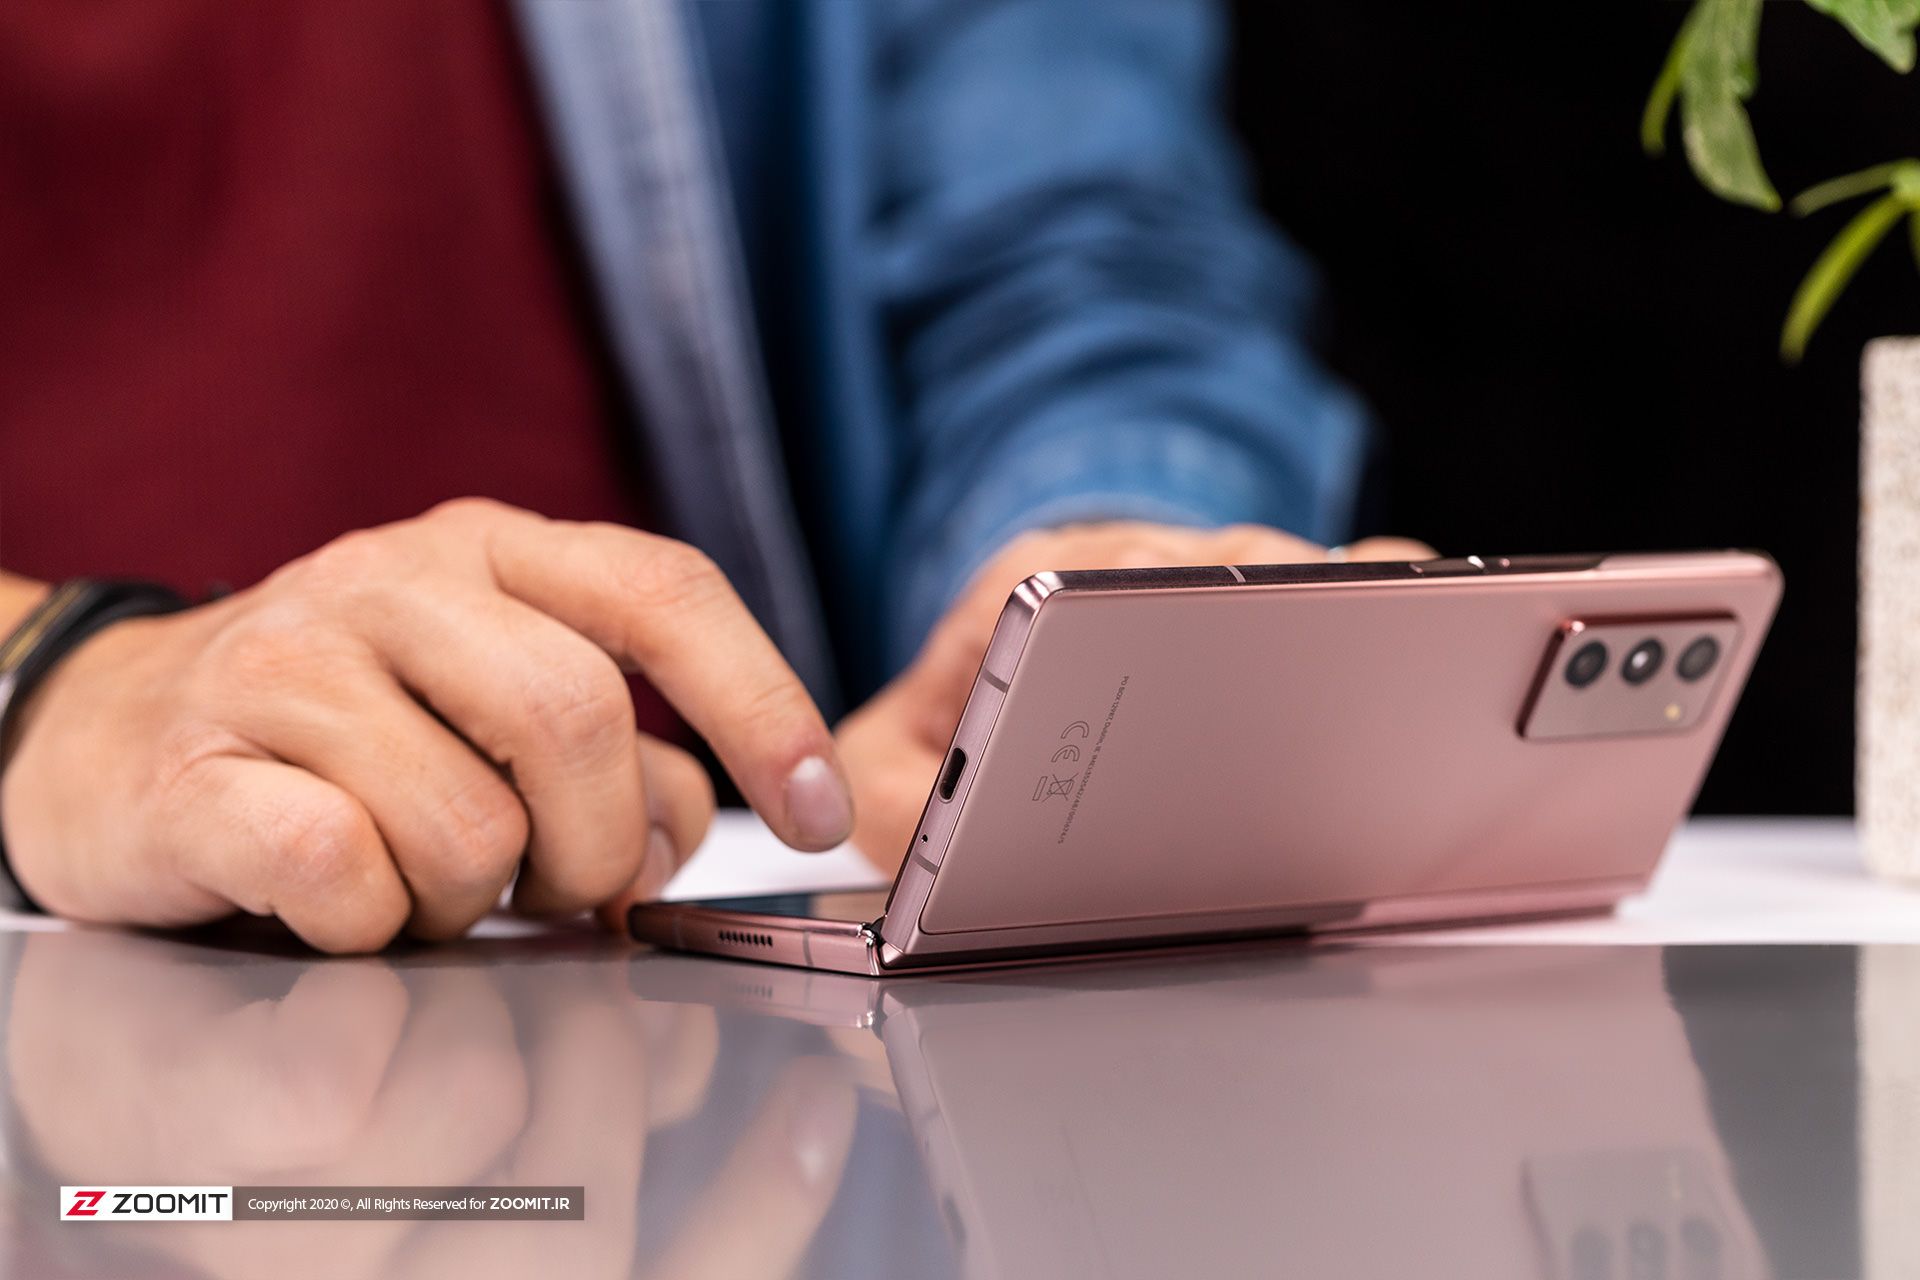 مرجع متخصصين ايران تايپ با گلسي زد فولد ۲ سامسونگ Samsung Galaxy Z Fold 2 در حالت Flex mode